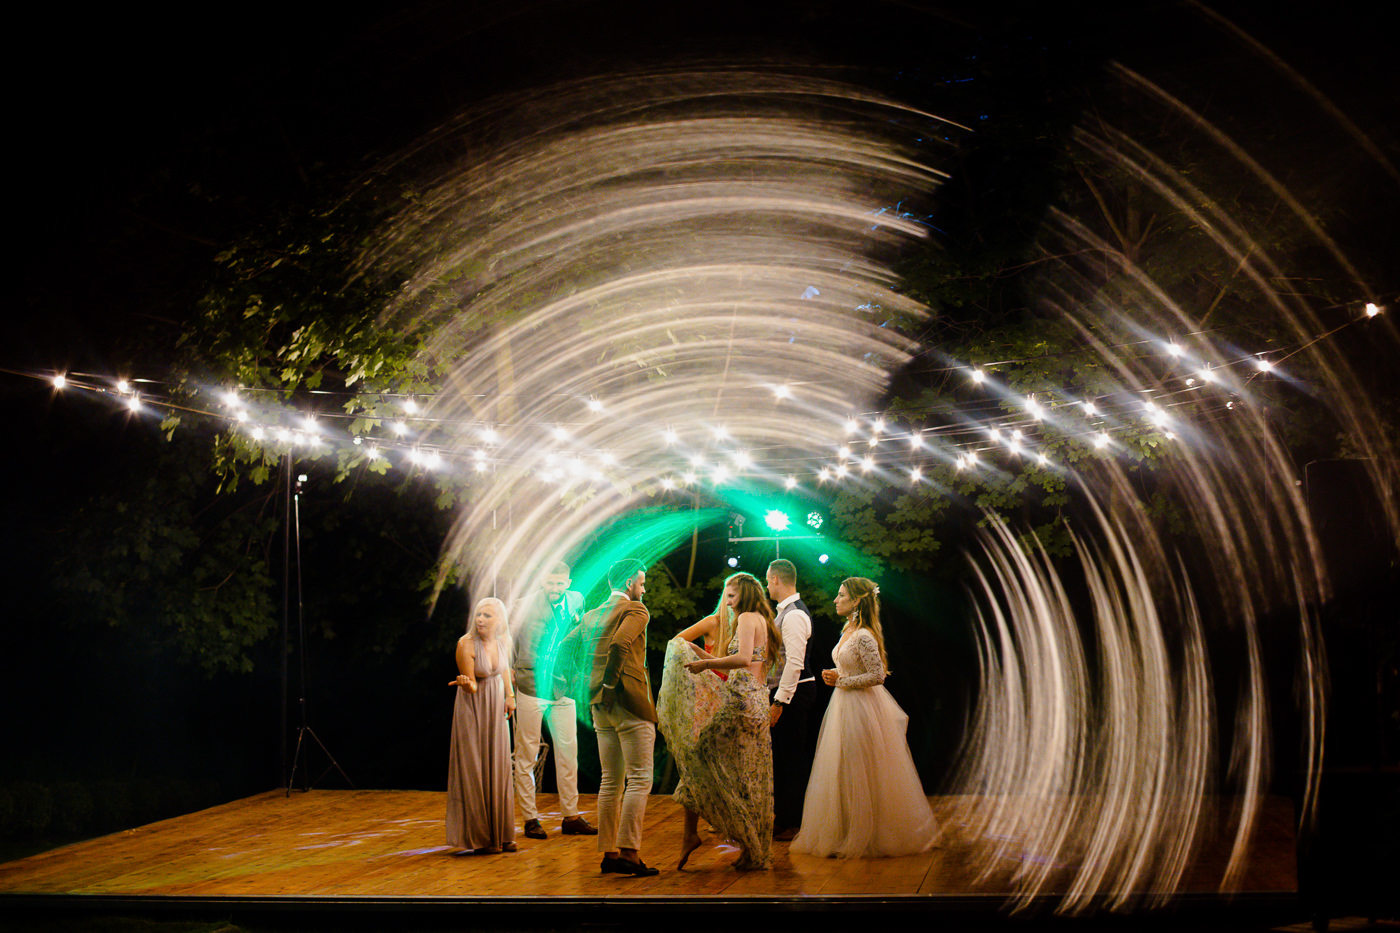 palac zelenskich wesele slub plenerowy sesja slubna w palacu fotograf slubny krakow 171